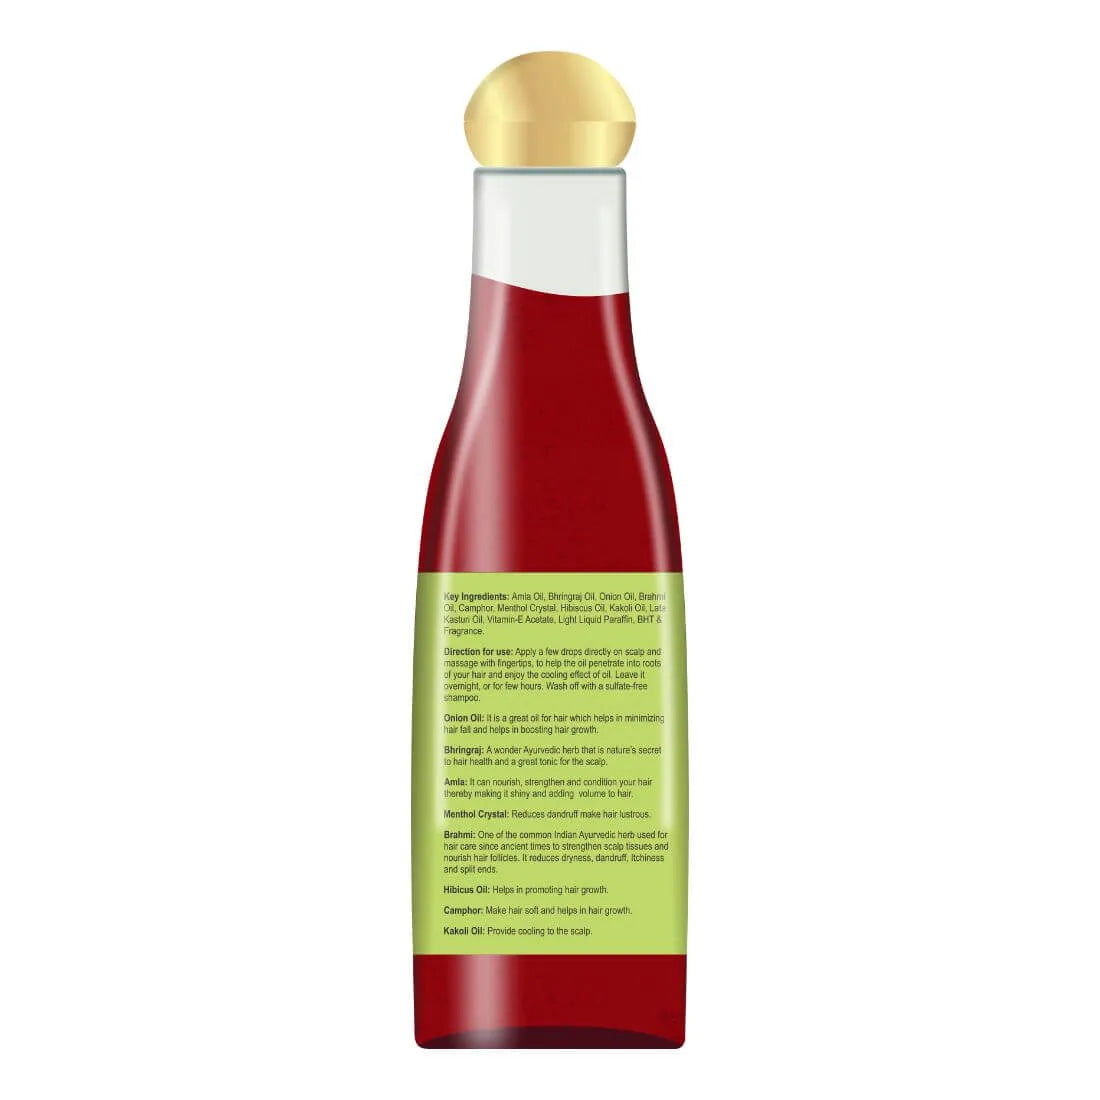 Ultrasense Cool Hair Oil | Sehatokart